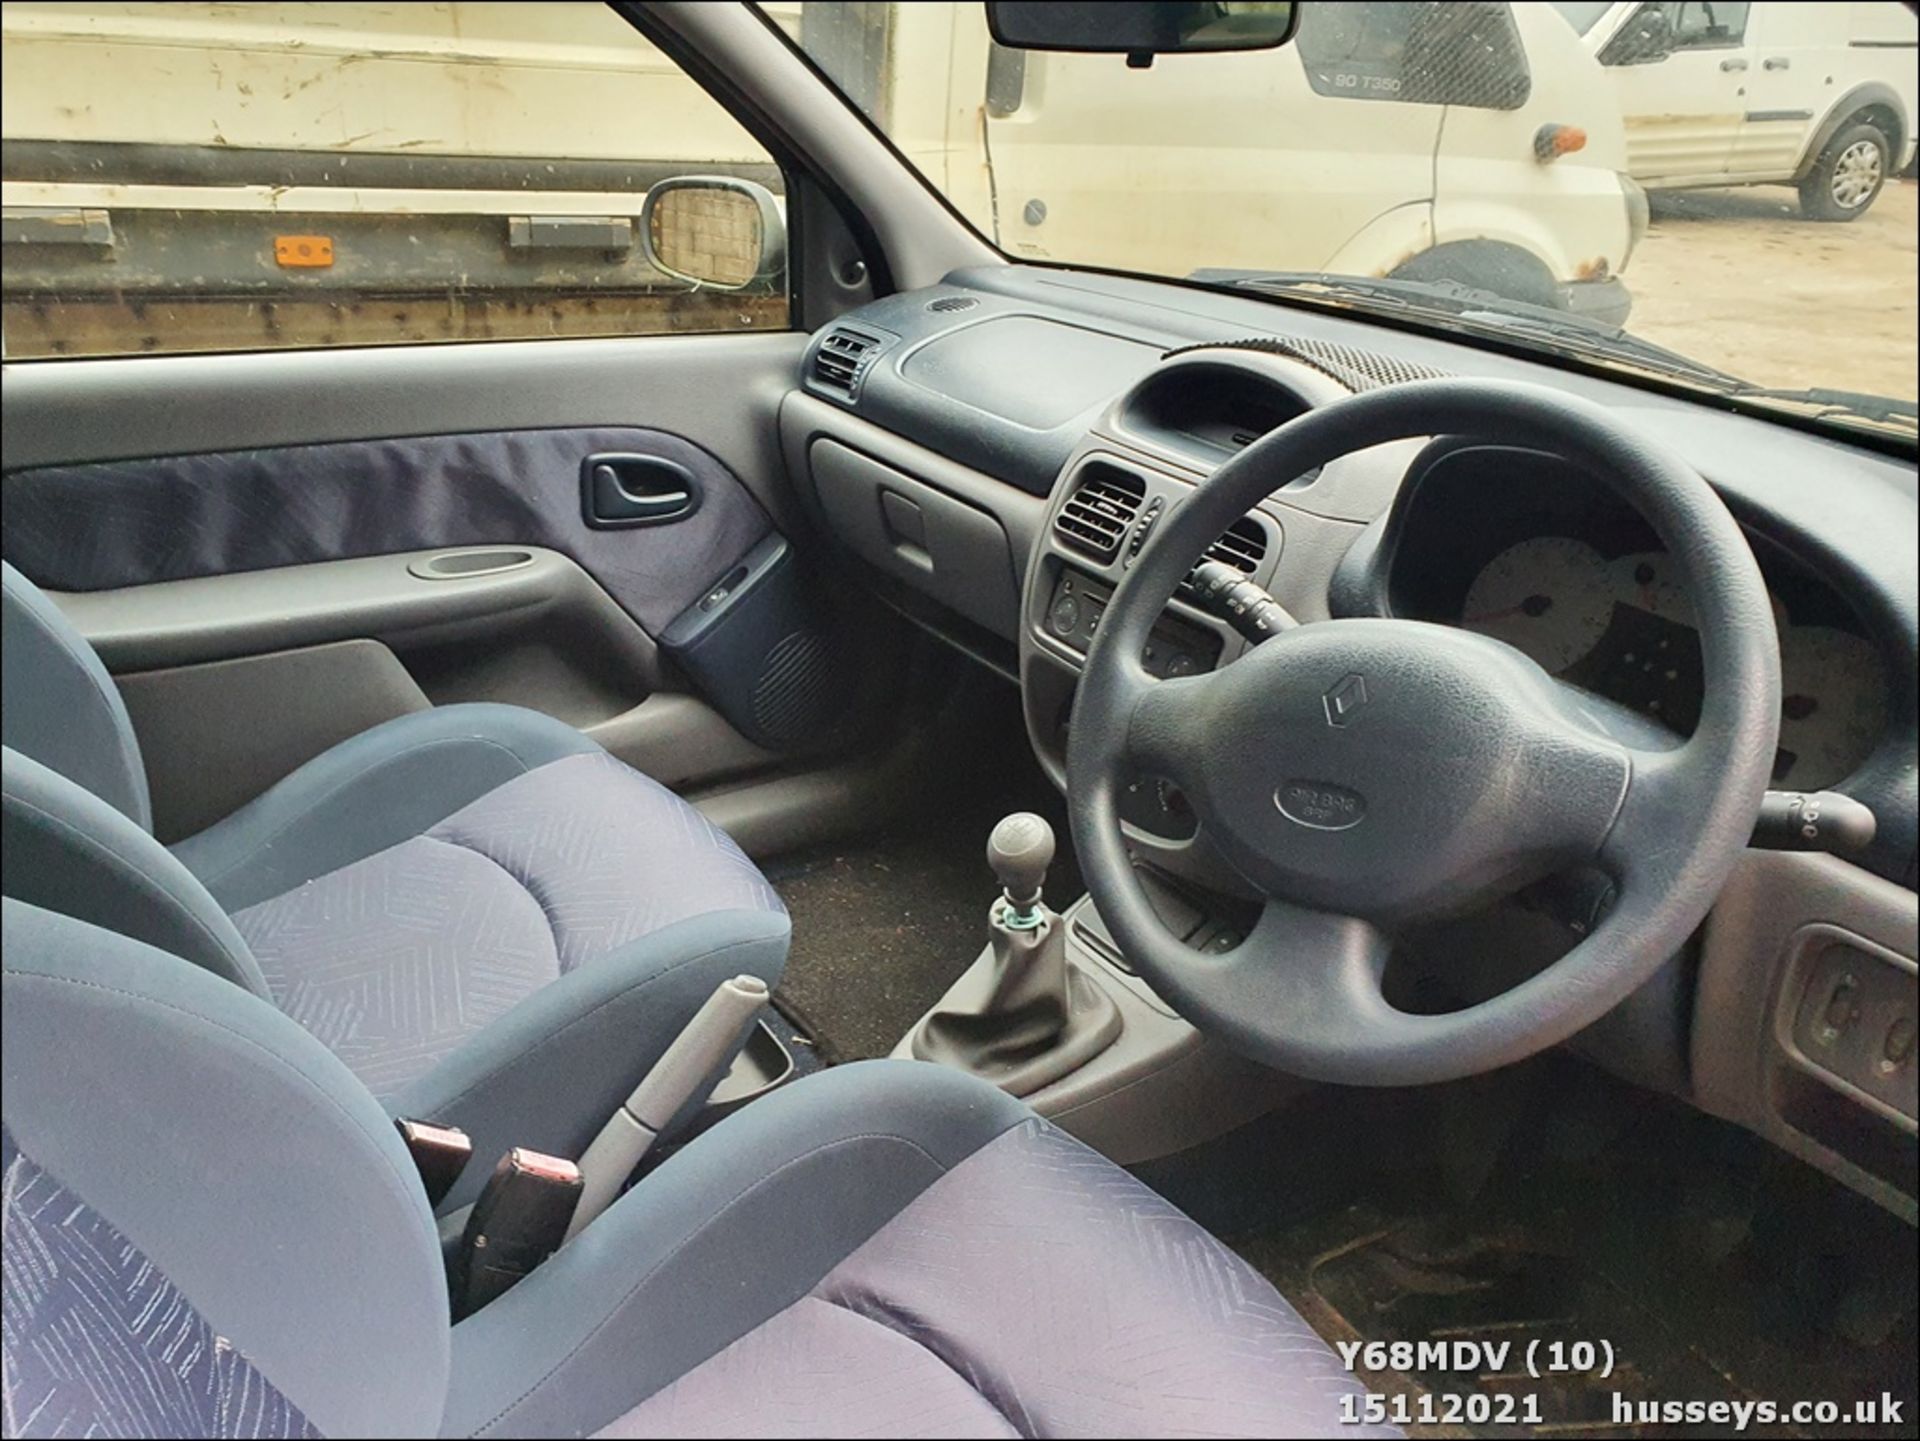 2001 RENAULT CLIO SPORT 16V - 1149cc 3dr Hatchback (Silver) - Image 10 of 13